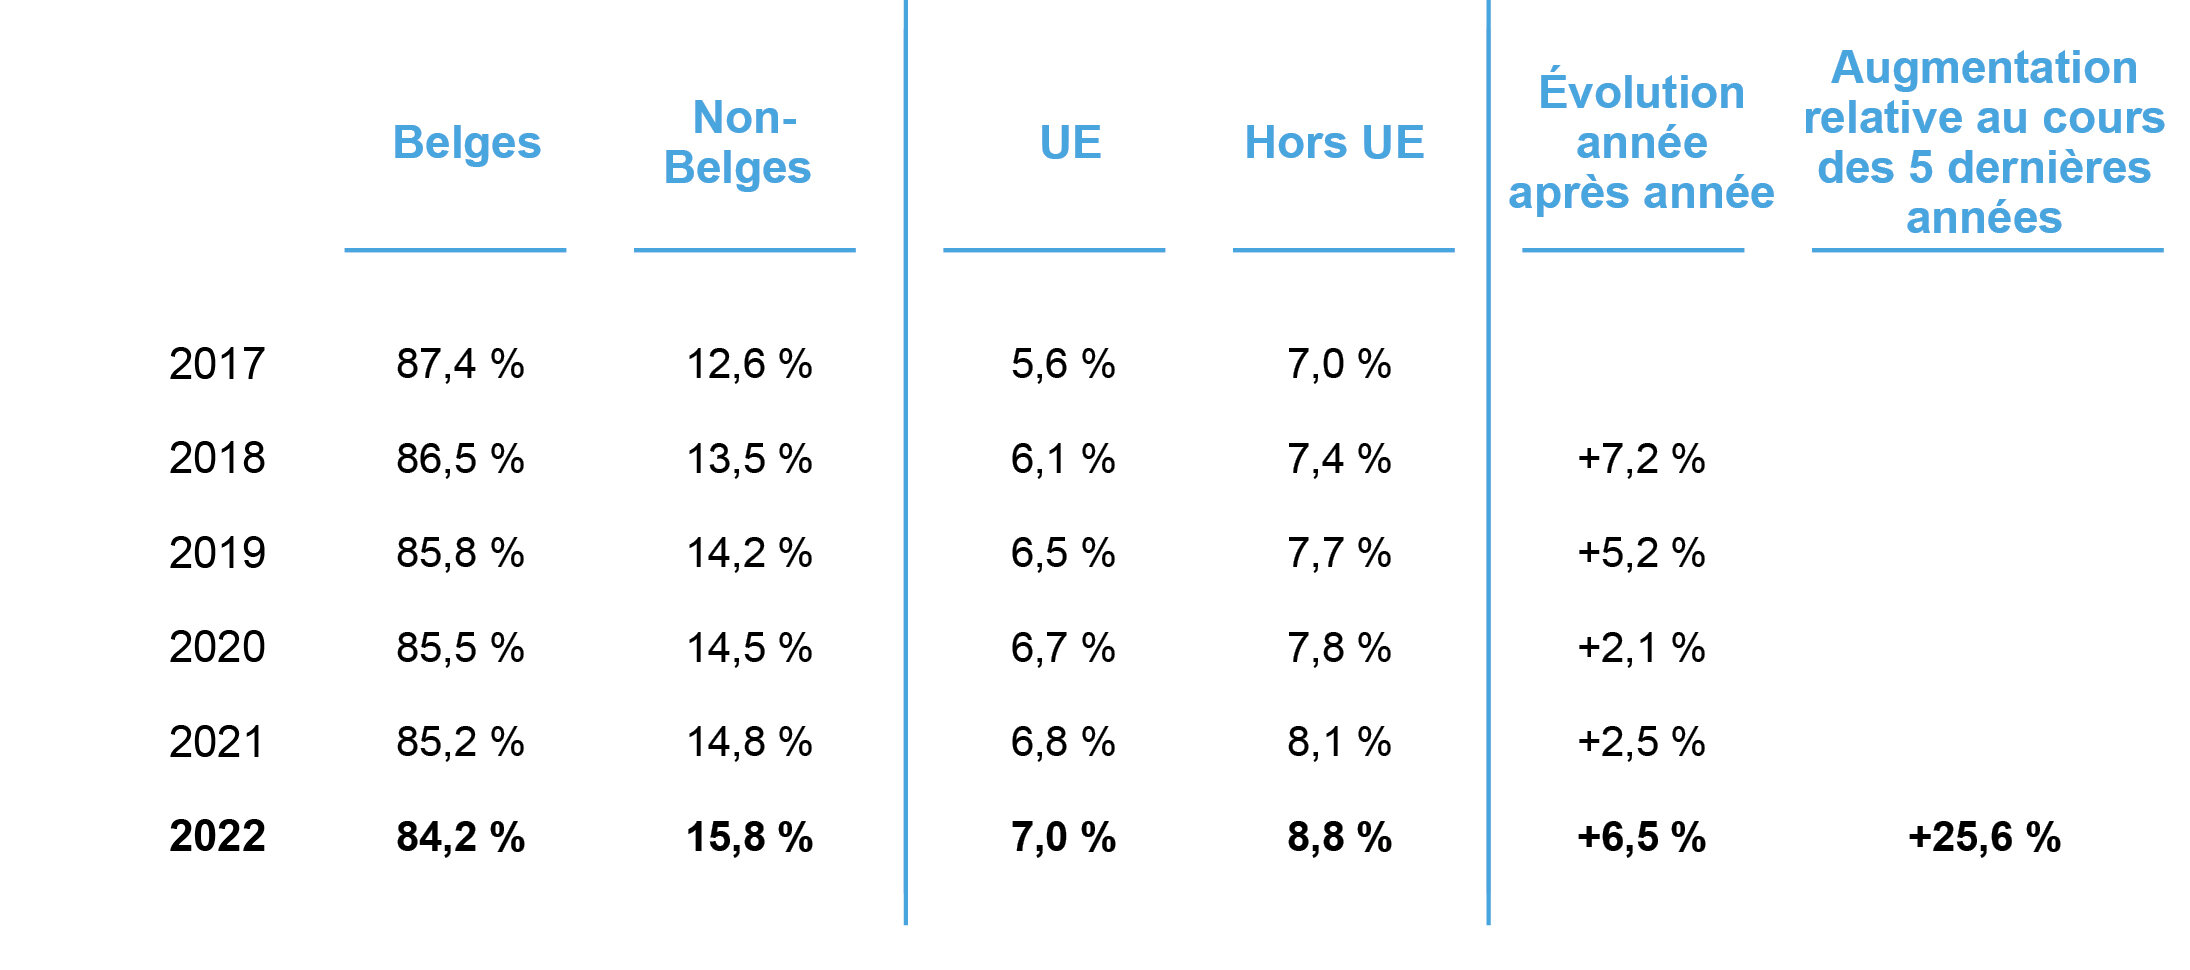 Illustration 1 : travailleurs, rapport Belges/non-Belges et UE/hors UE, du 31 décembre 2017 à 2022